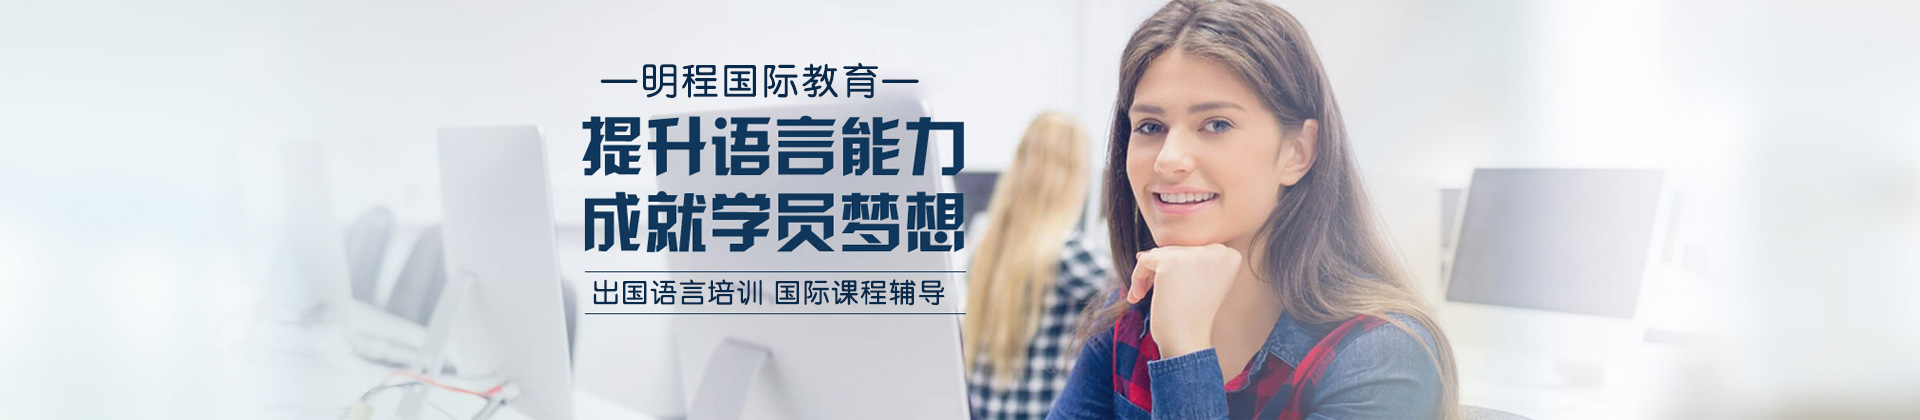 广州明程国际教育